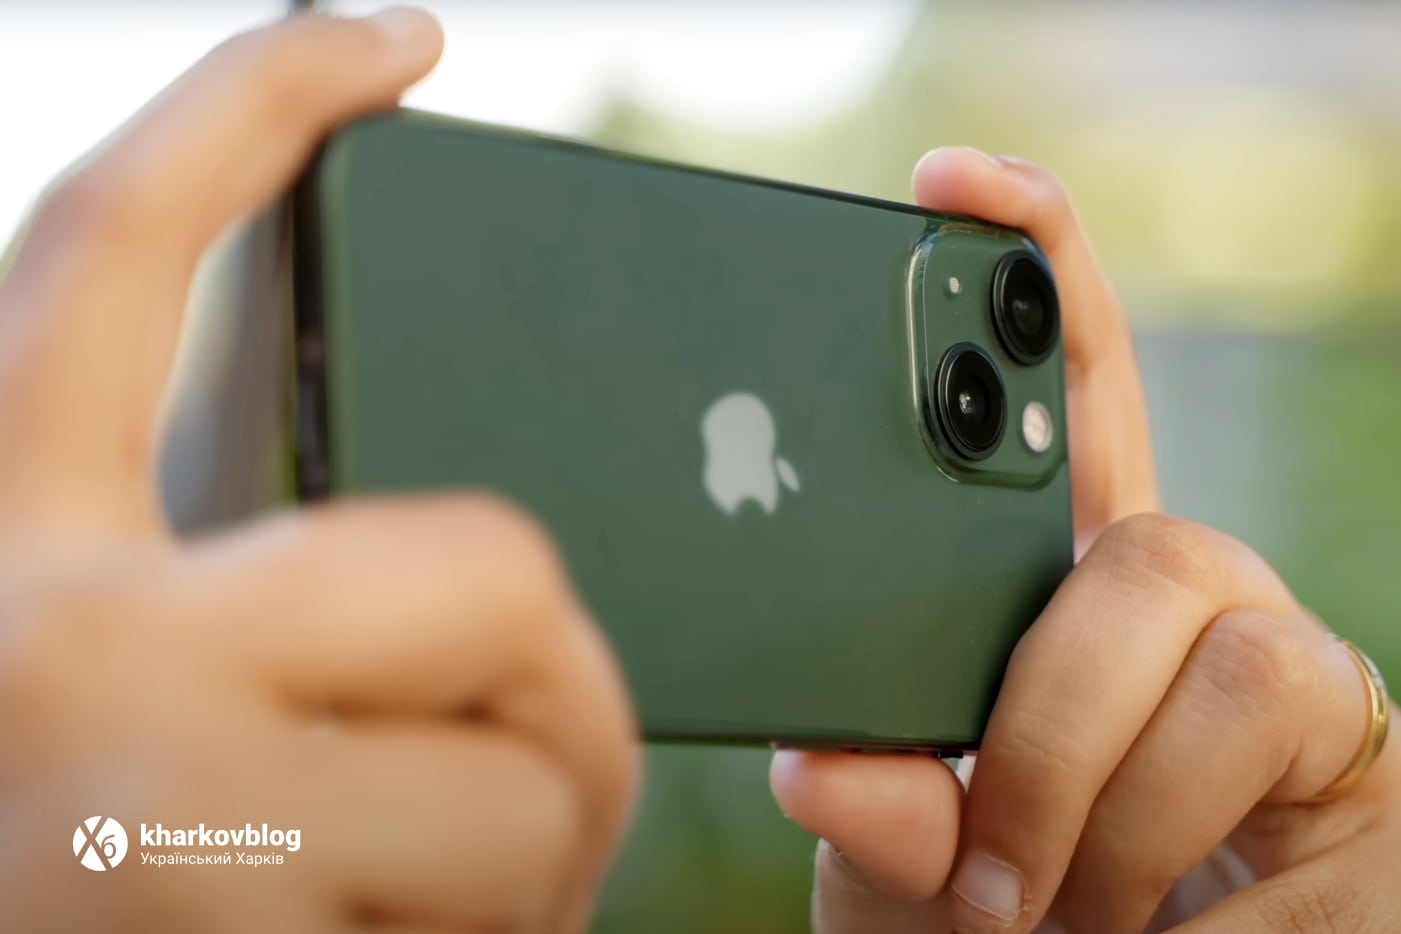 Недостатки и минусы iPhone 13 Mini: плохая автономность, фронтальная камера  и эффект шим на амолед-экране